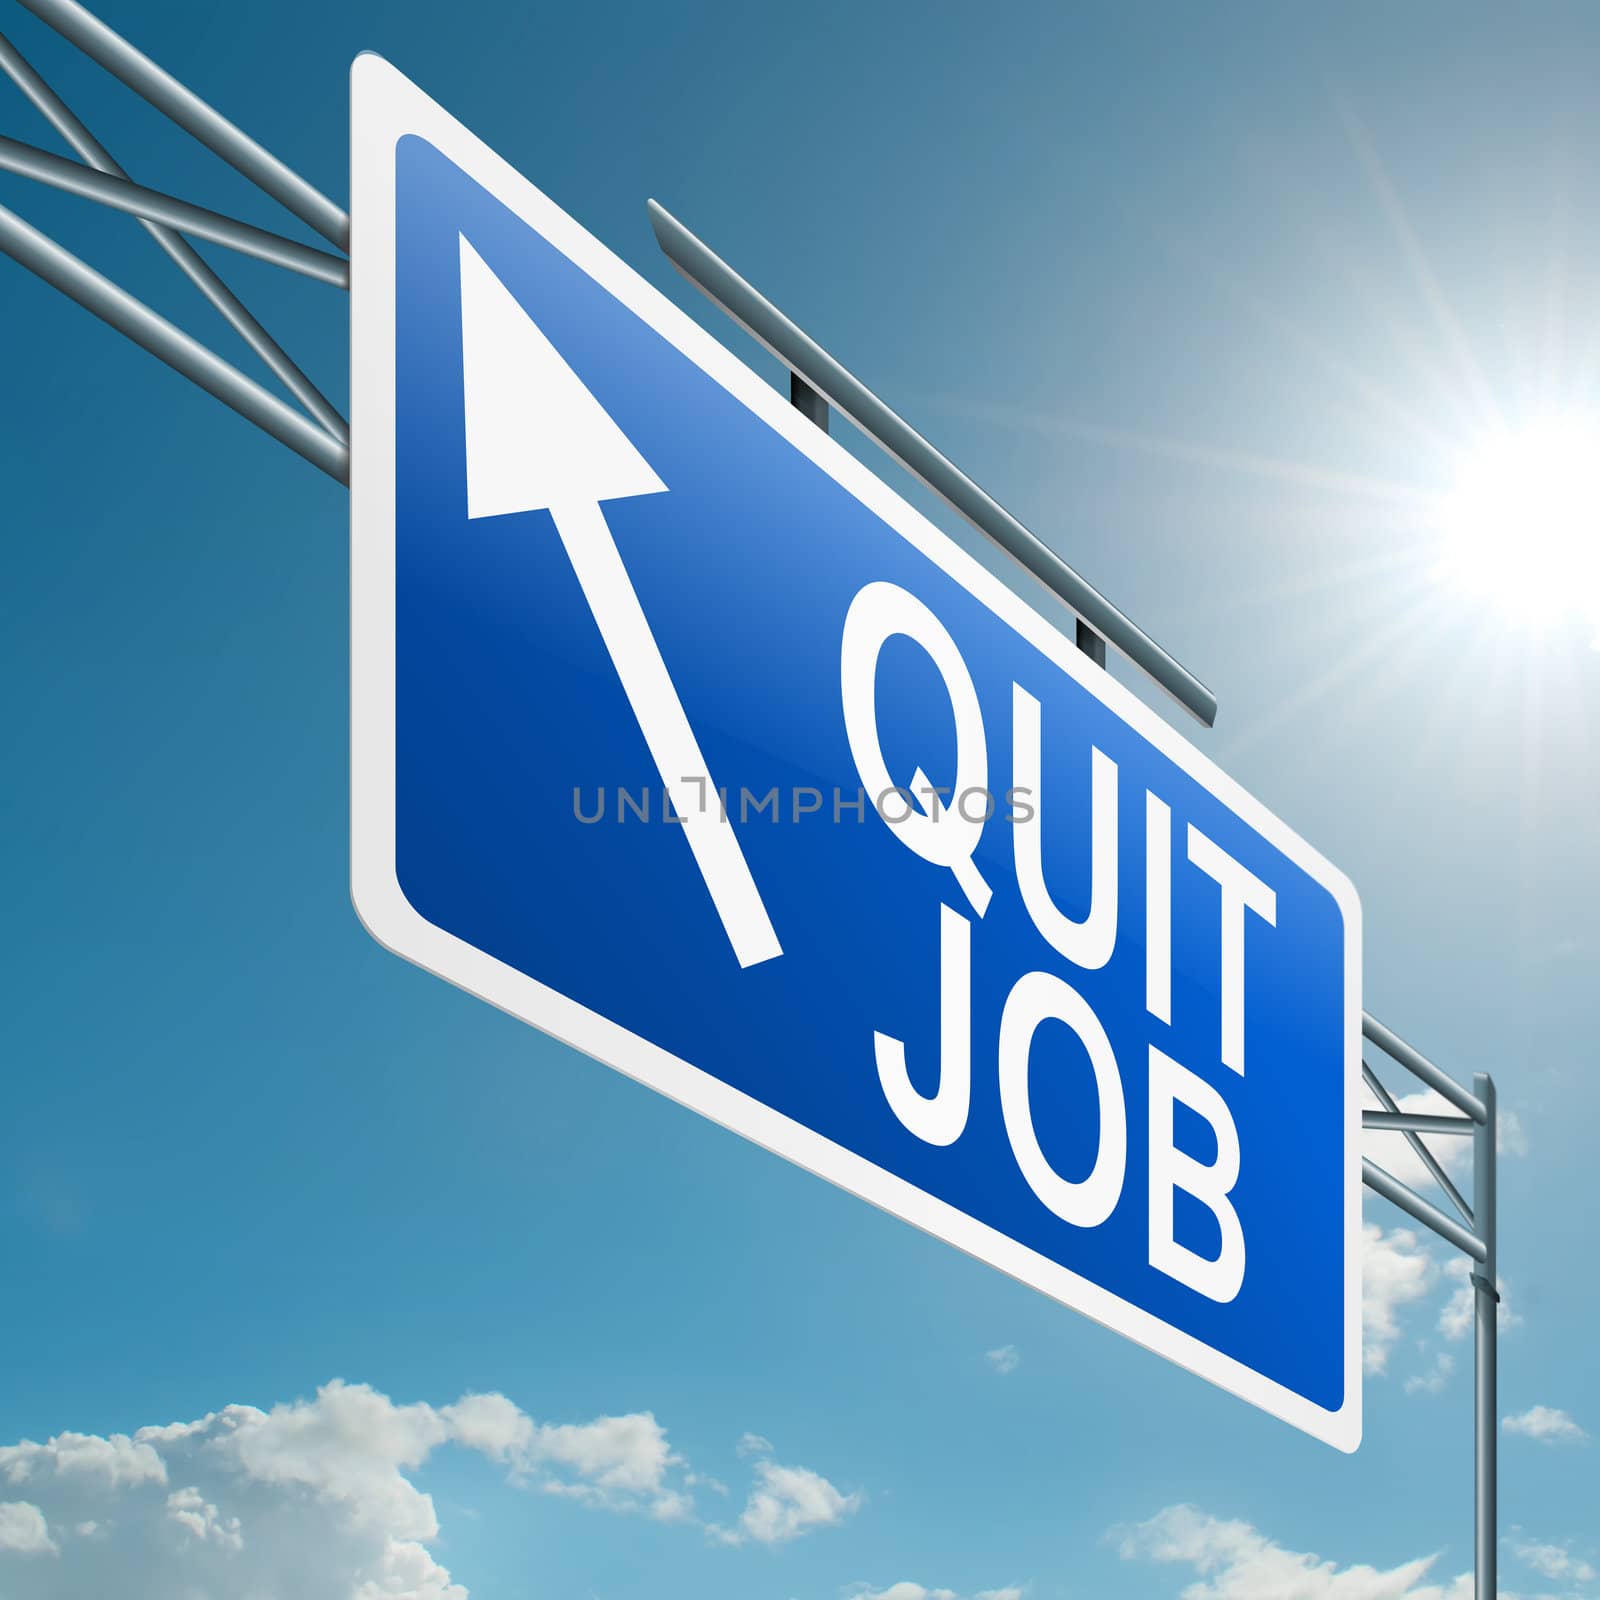 Quit job. by 72soul